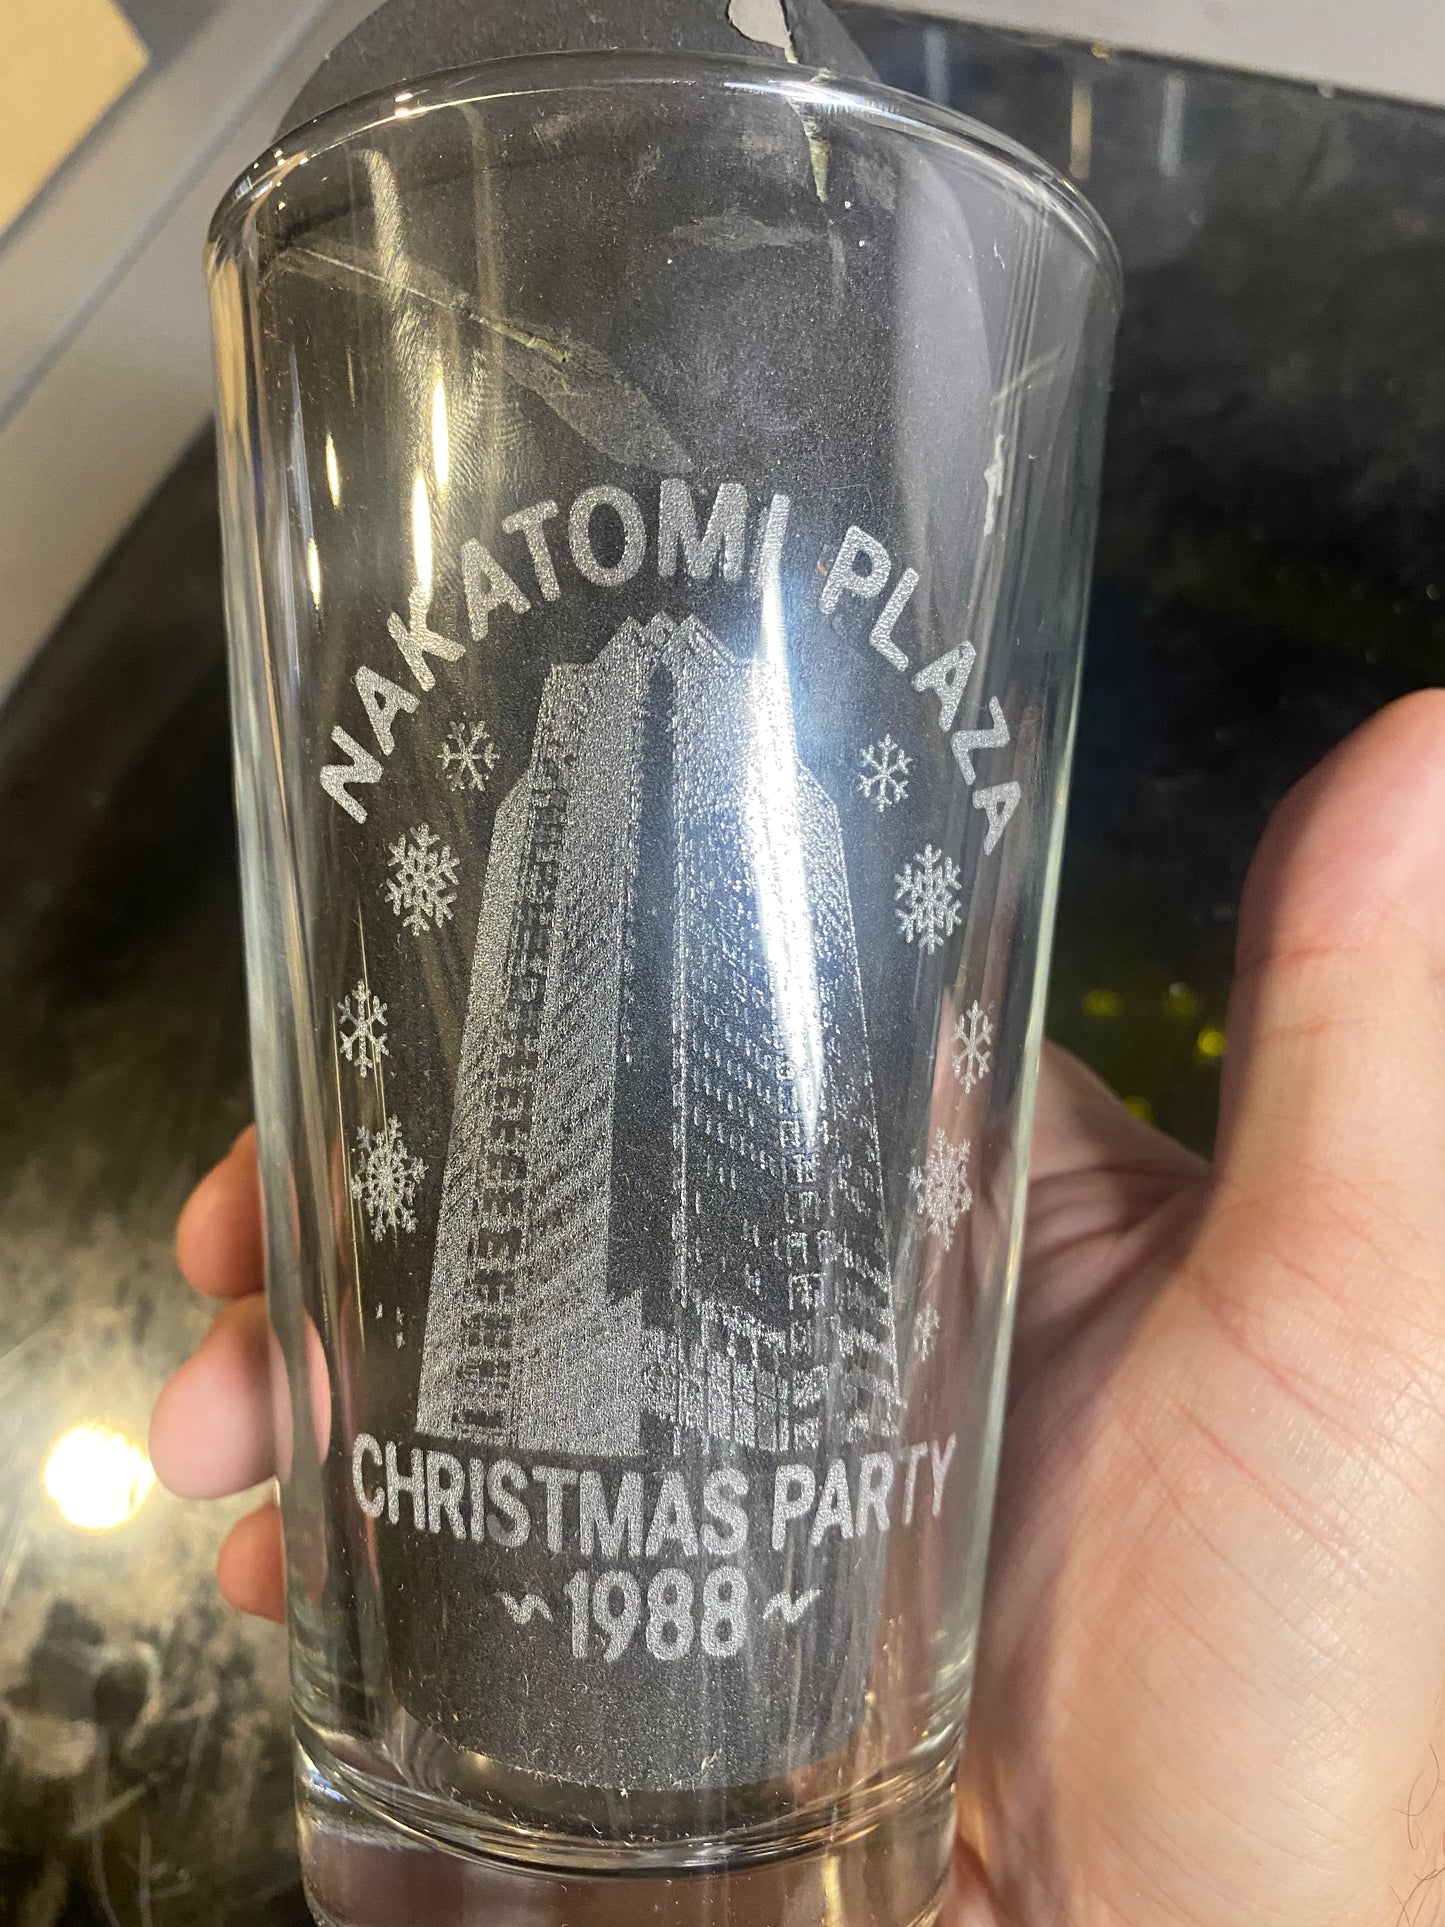 Die Hard Nakatomi Plaza Christmas Beer Pub Pint Glass - Geek House Creations